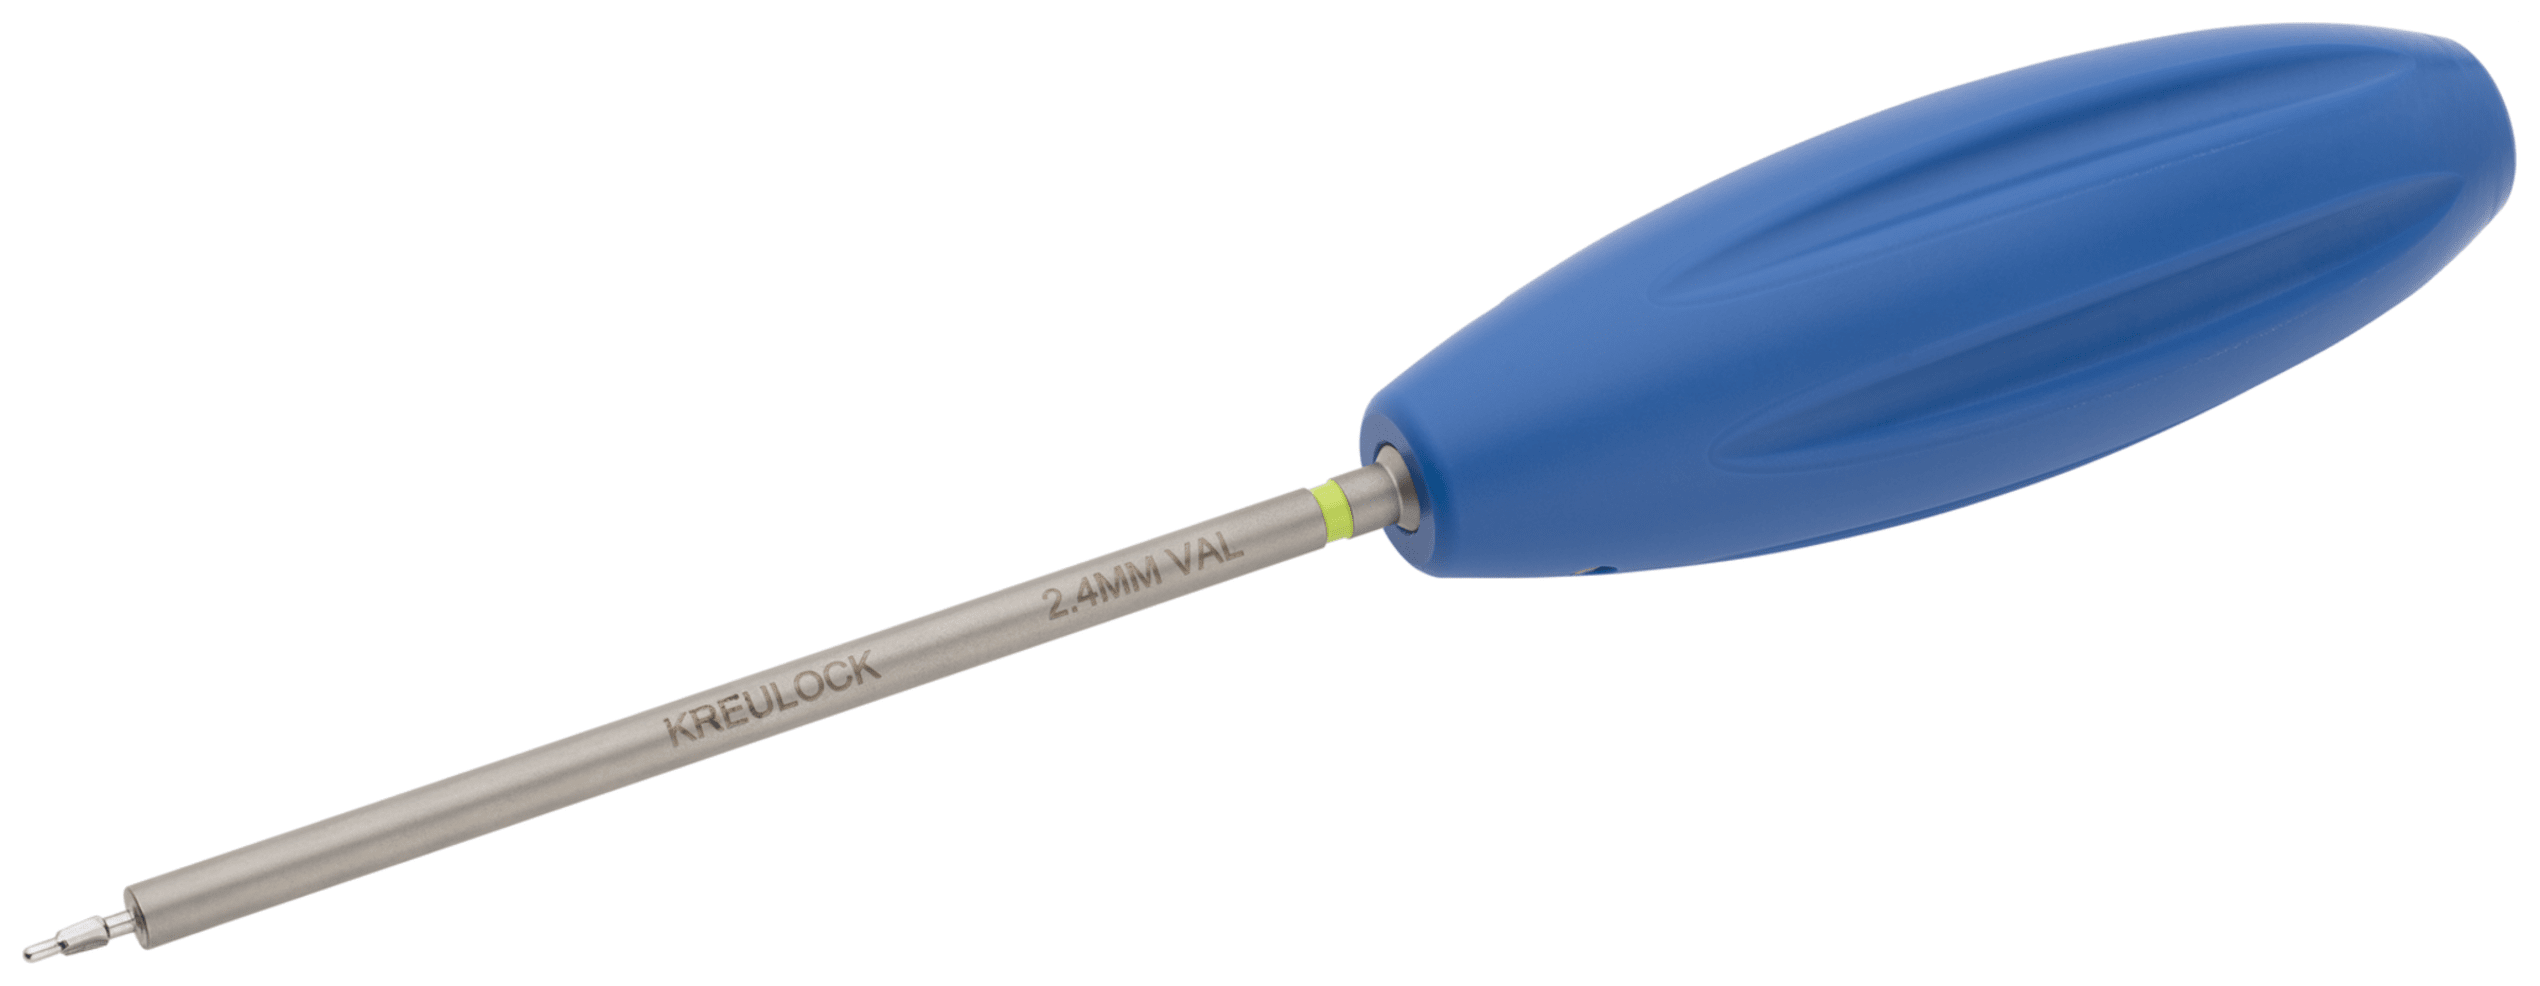 2.4 mm VAL Profile Drill